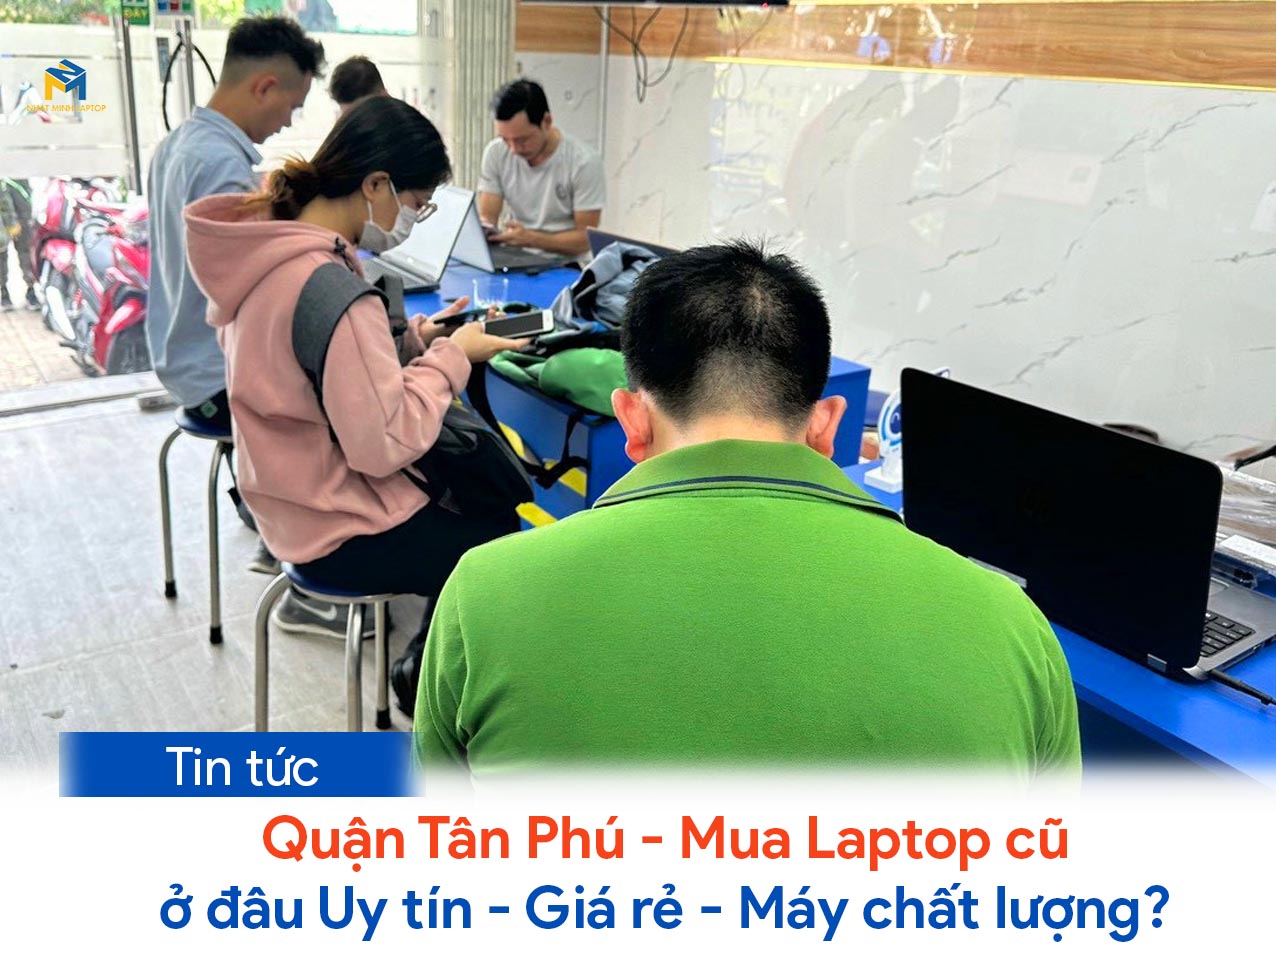 Mua Laptop cũ Quận Tân Phú, Giá Rẻ, Chất lượng tại Nhật Minh